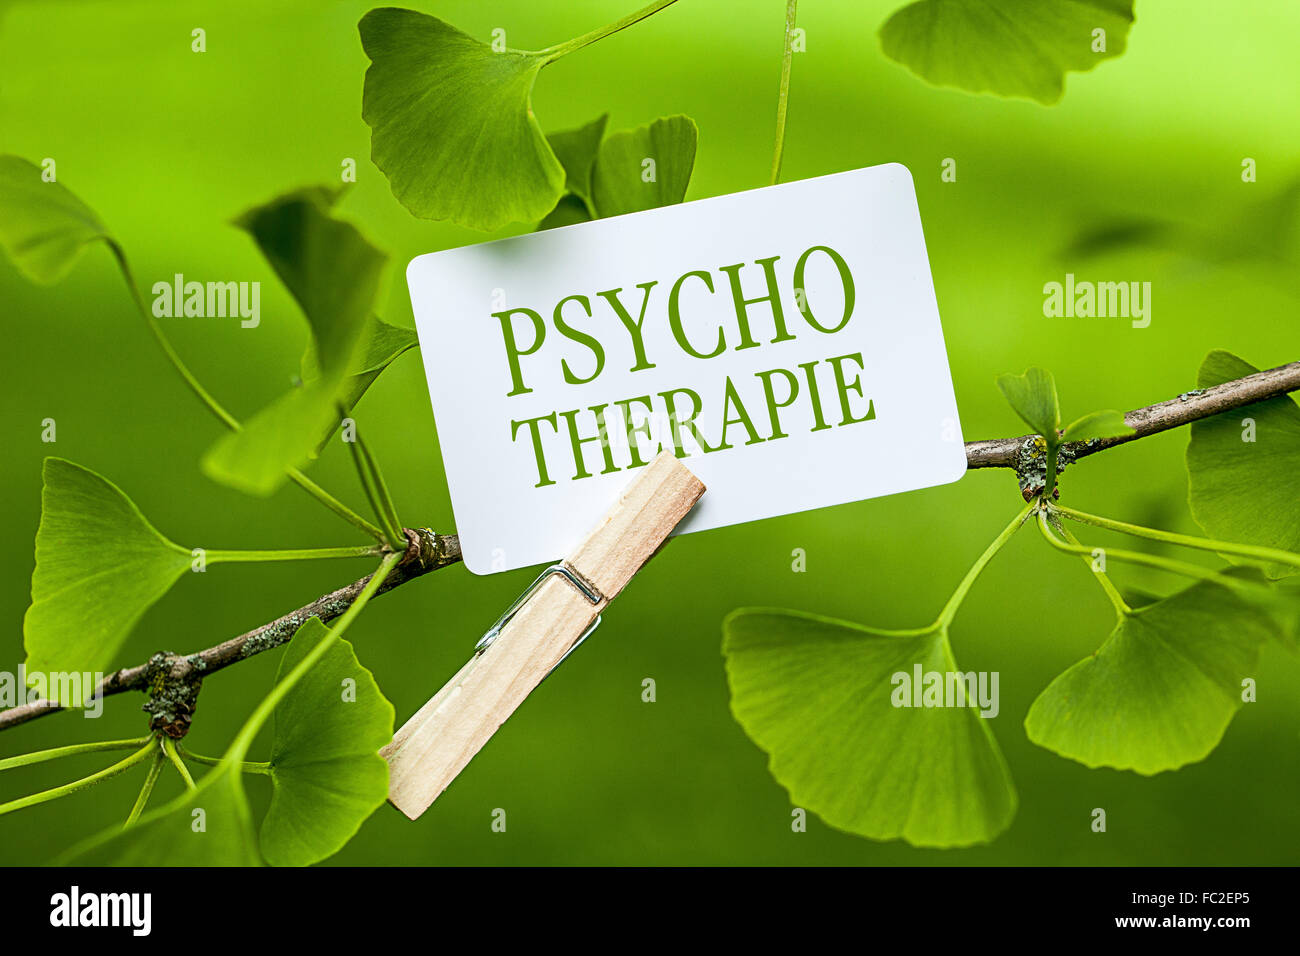 La parola "Psychotherapie in una struttura ad albero di gingko Foto Stock